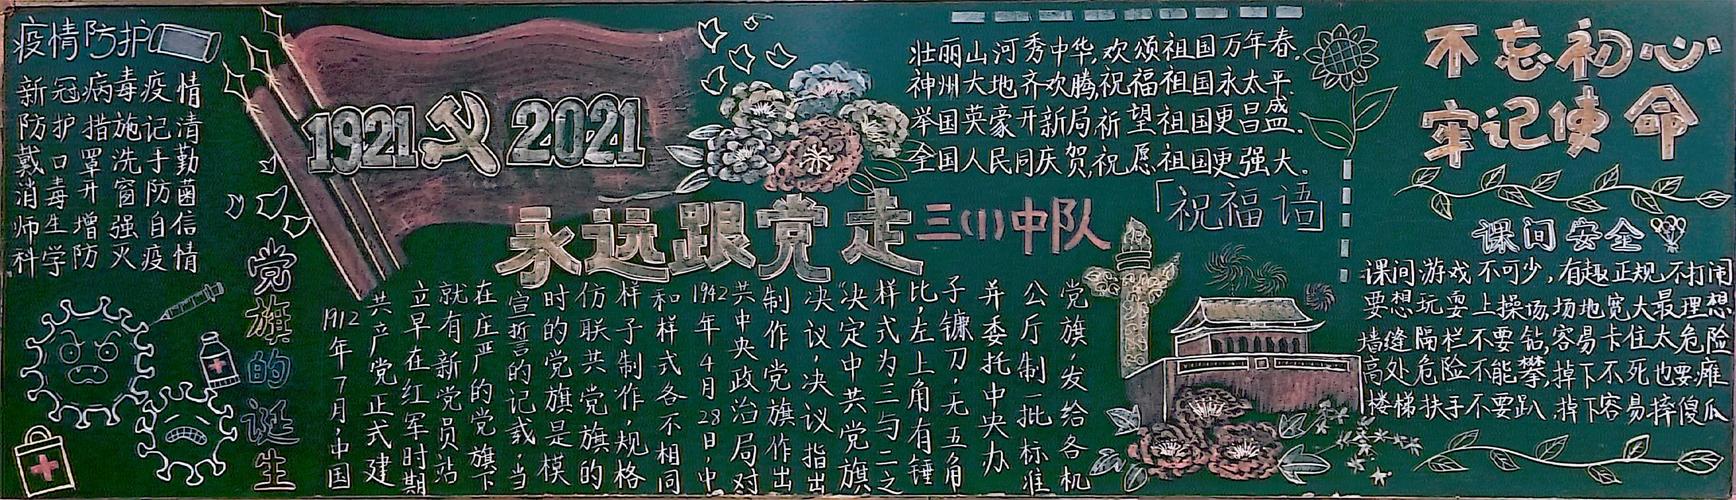 走争做新时代接班人---徐州市西朱小学庆建党100周年黑板报评比活动